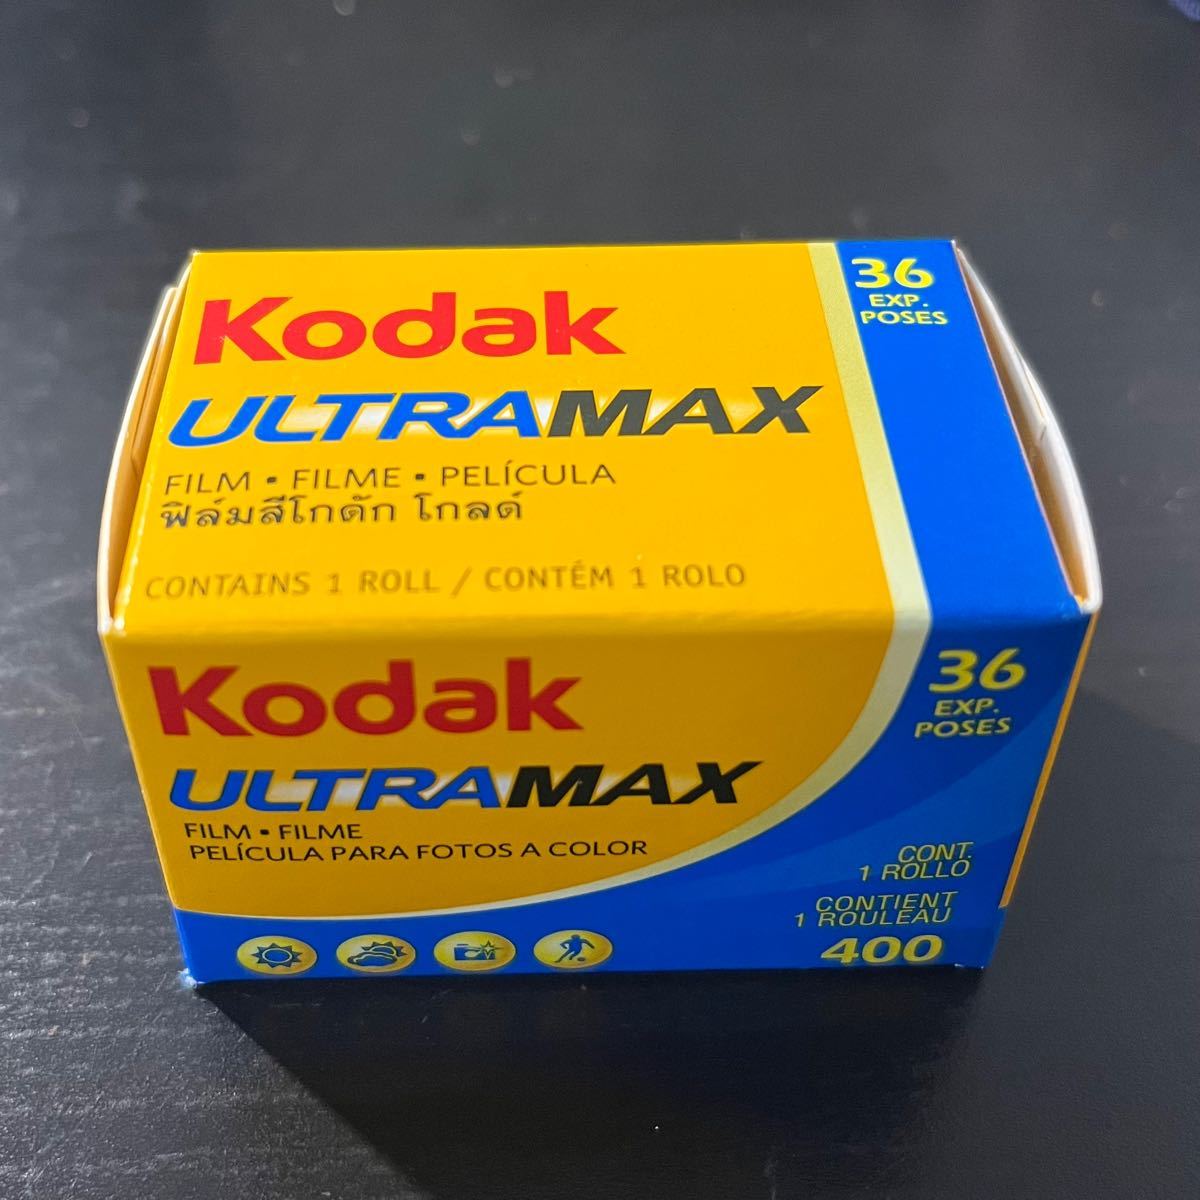 コダック ULTRAMAX400 36枚撮り 新パッケージ (kodak ULTRA MAX 400 ウルトラマックス カラーネガフィルム)